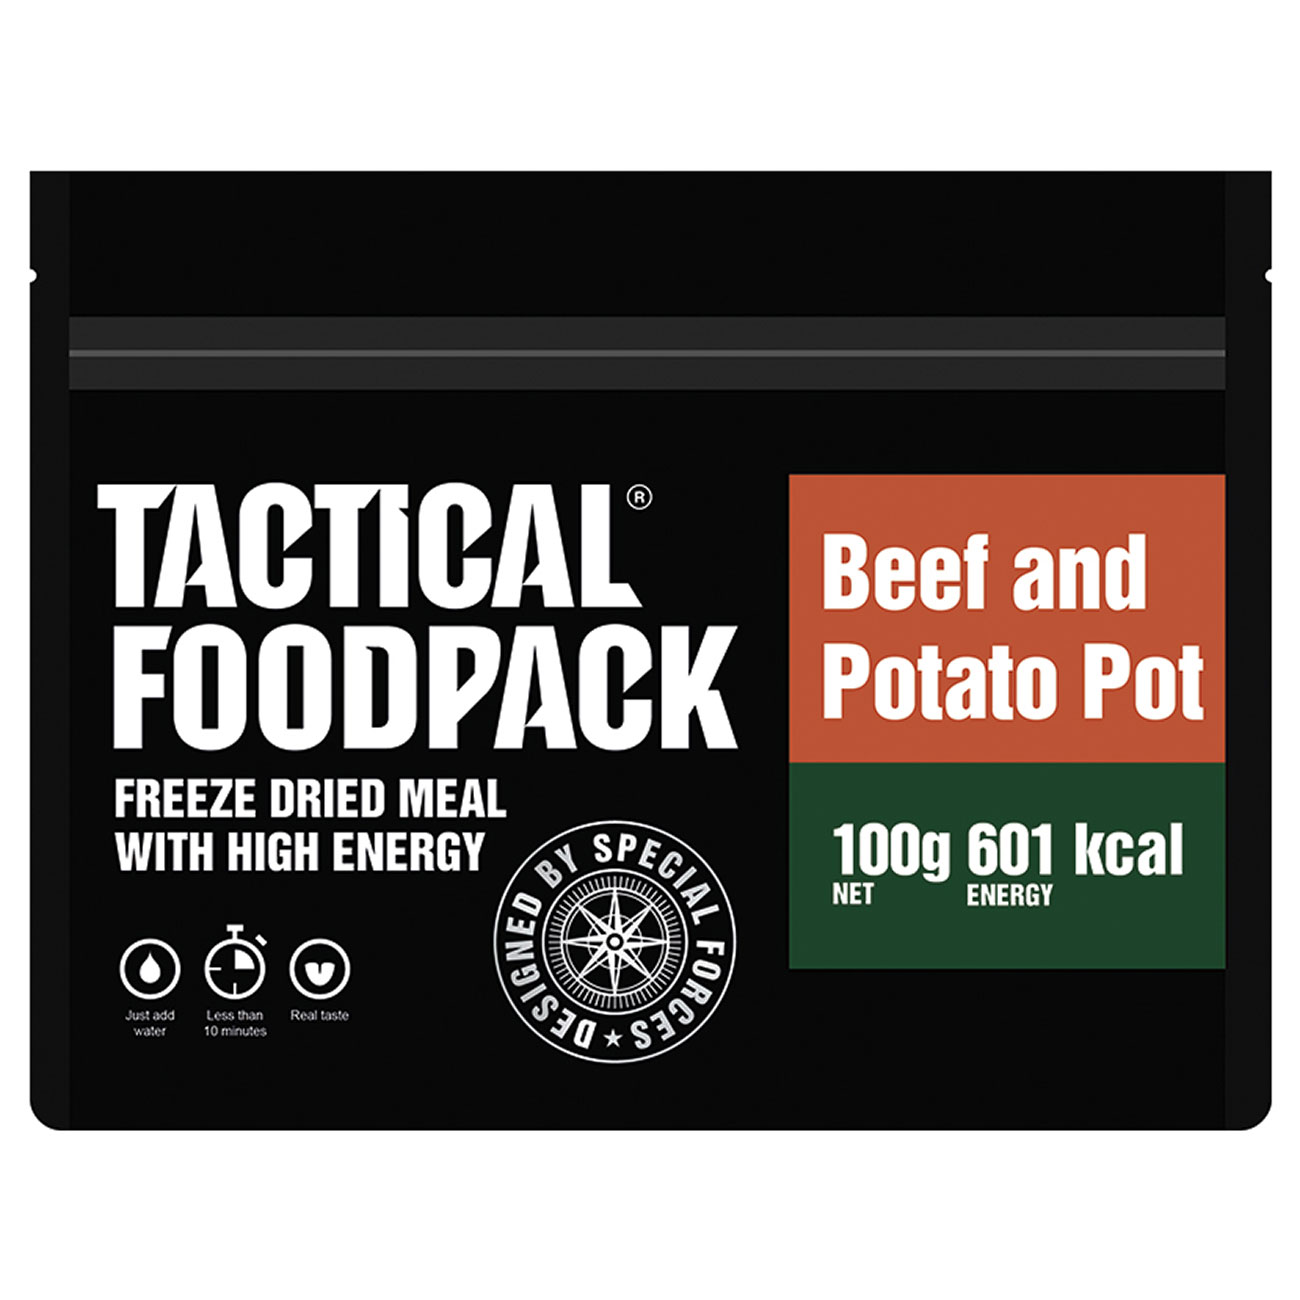 Tactical Foodpack Outdoor Mahlzeit Rindfleisch-Kartoffel-Topf Bild 1